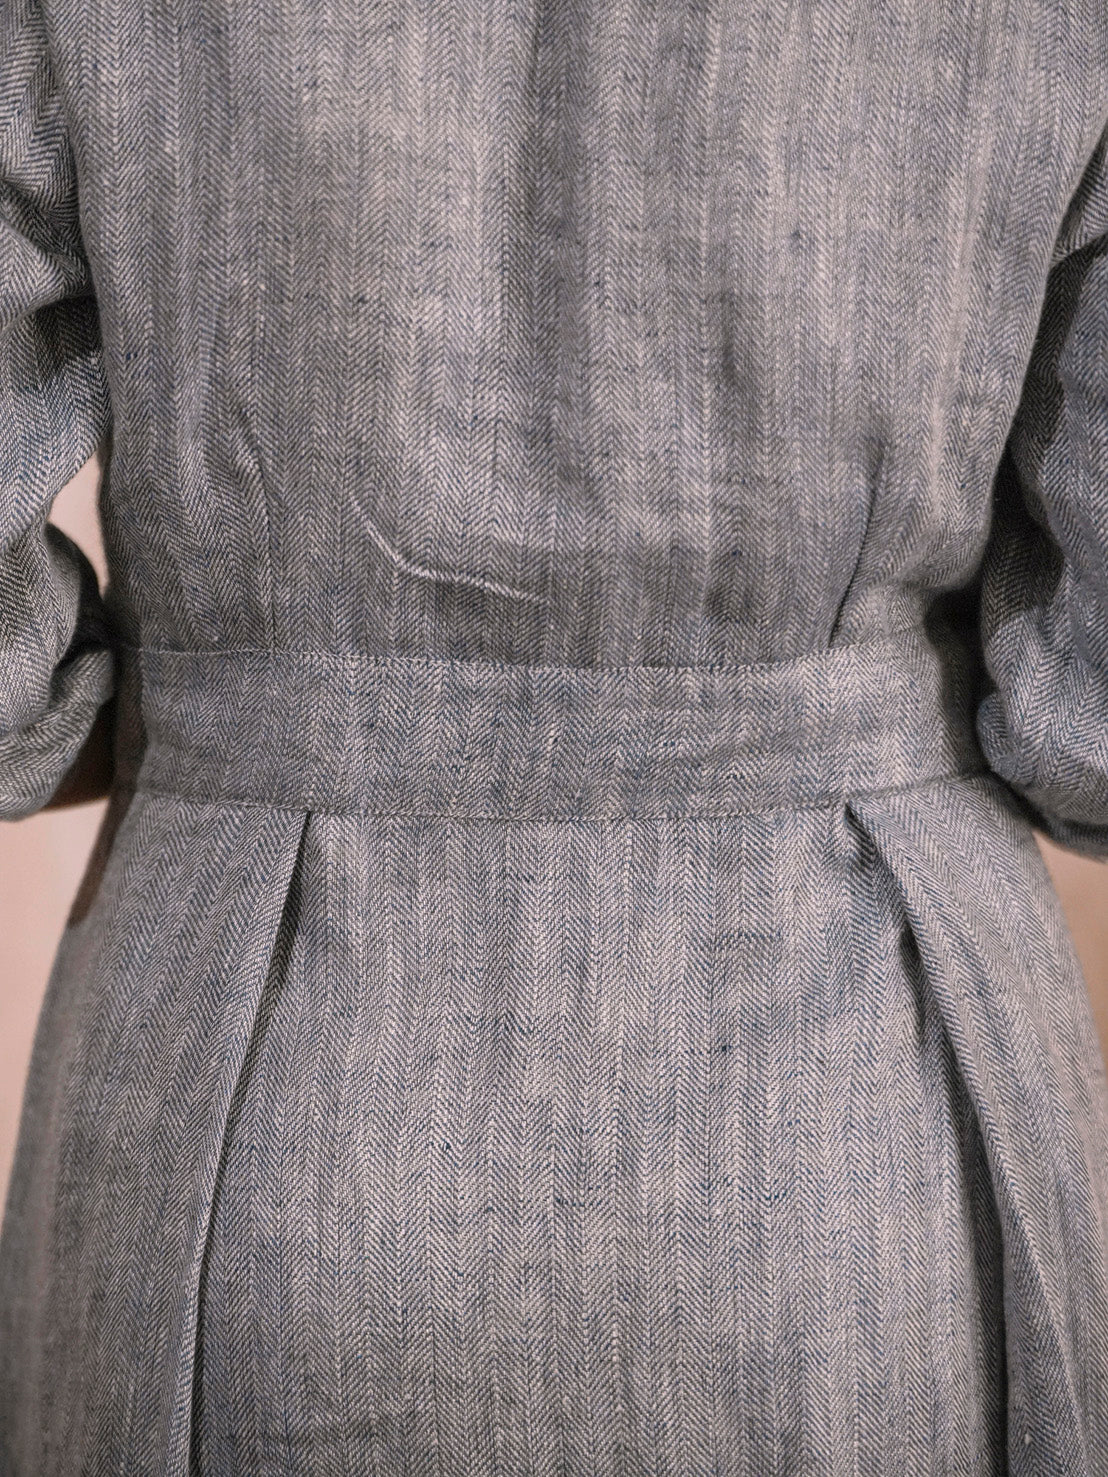 Meher  | Handwoven Linen herringbone weave Dress